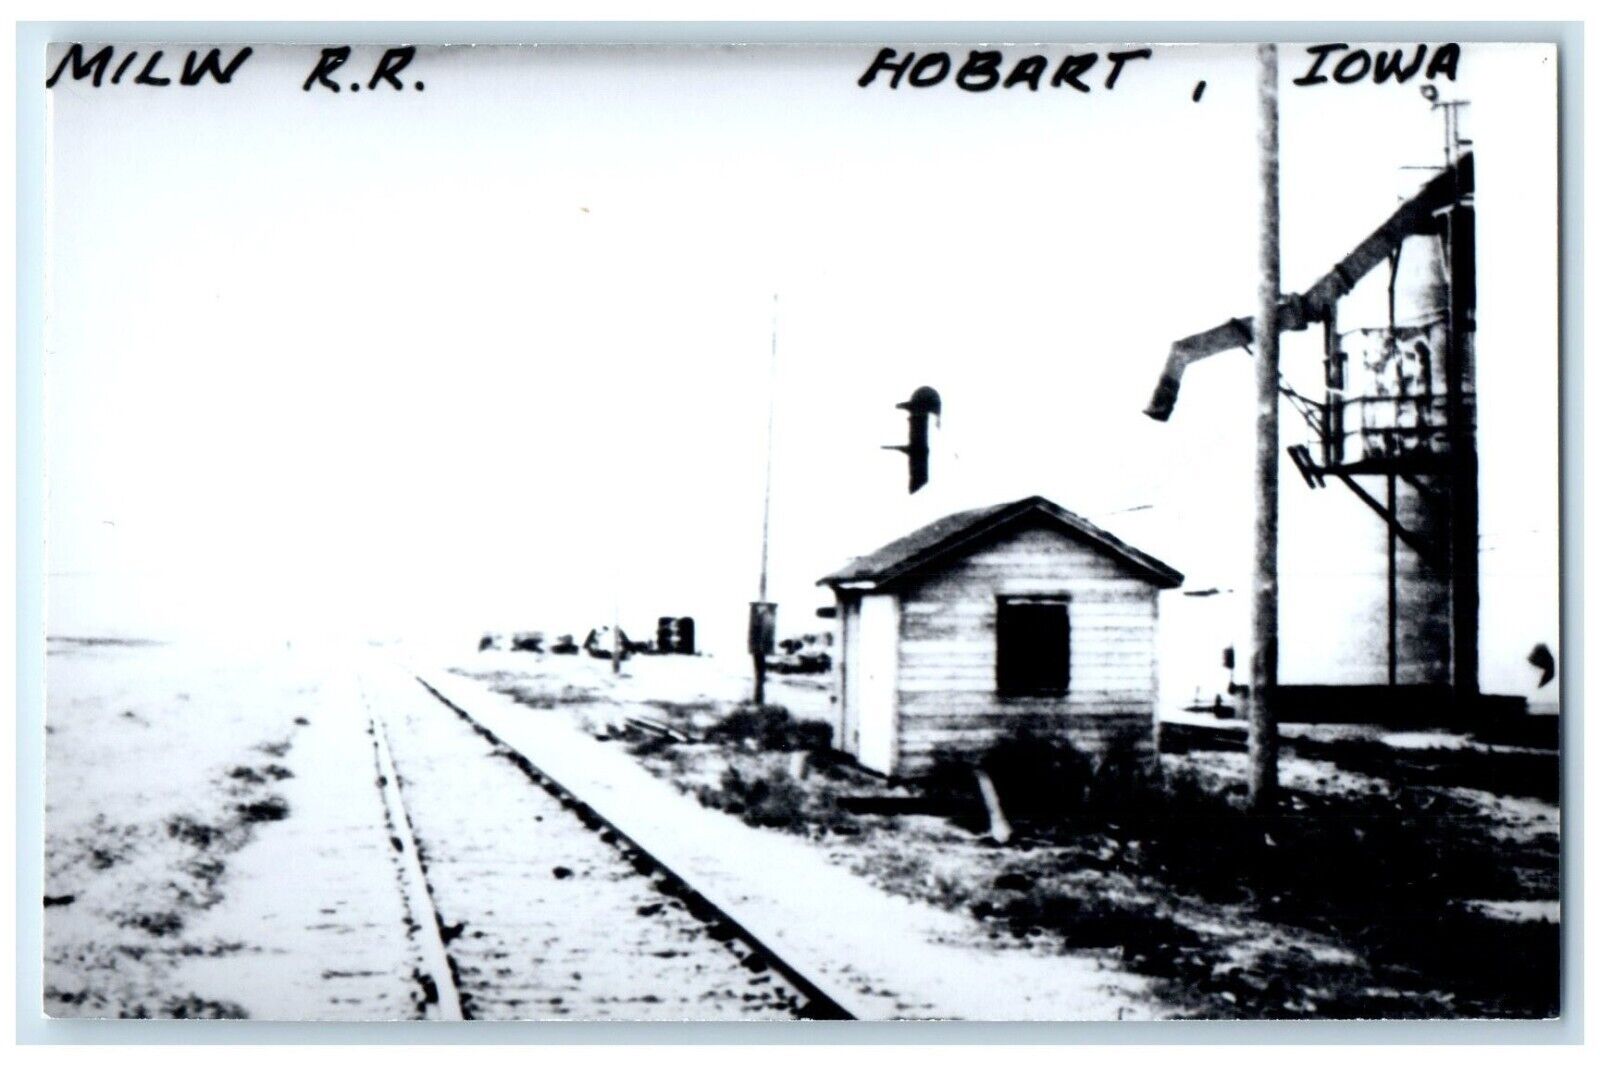 c1960's MILW Depot Hobart Iowa Railroad Train Depot Station RPPC Photo Postcard